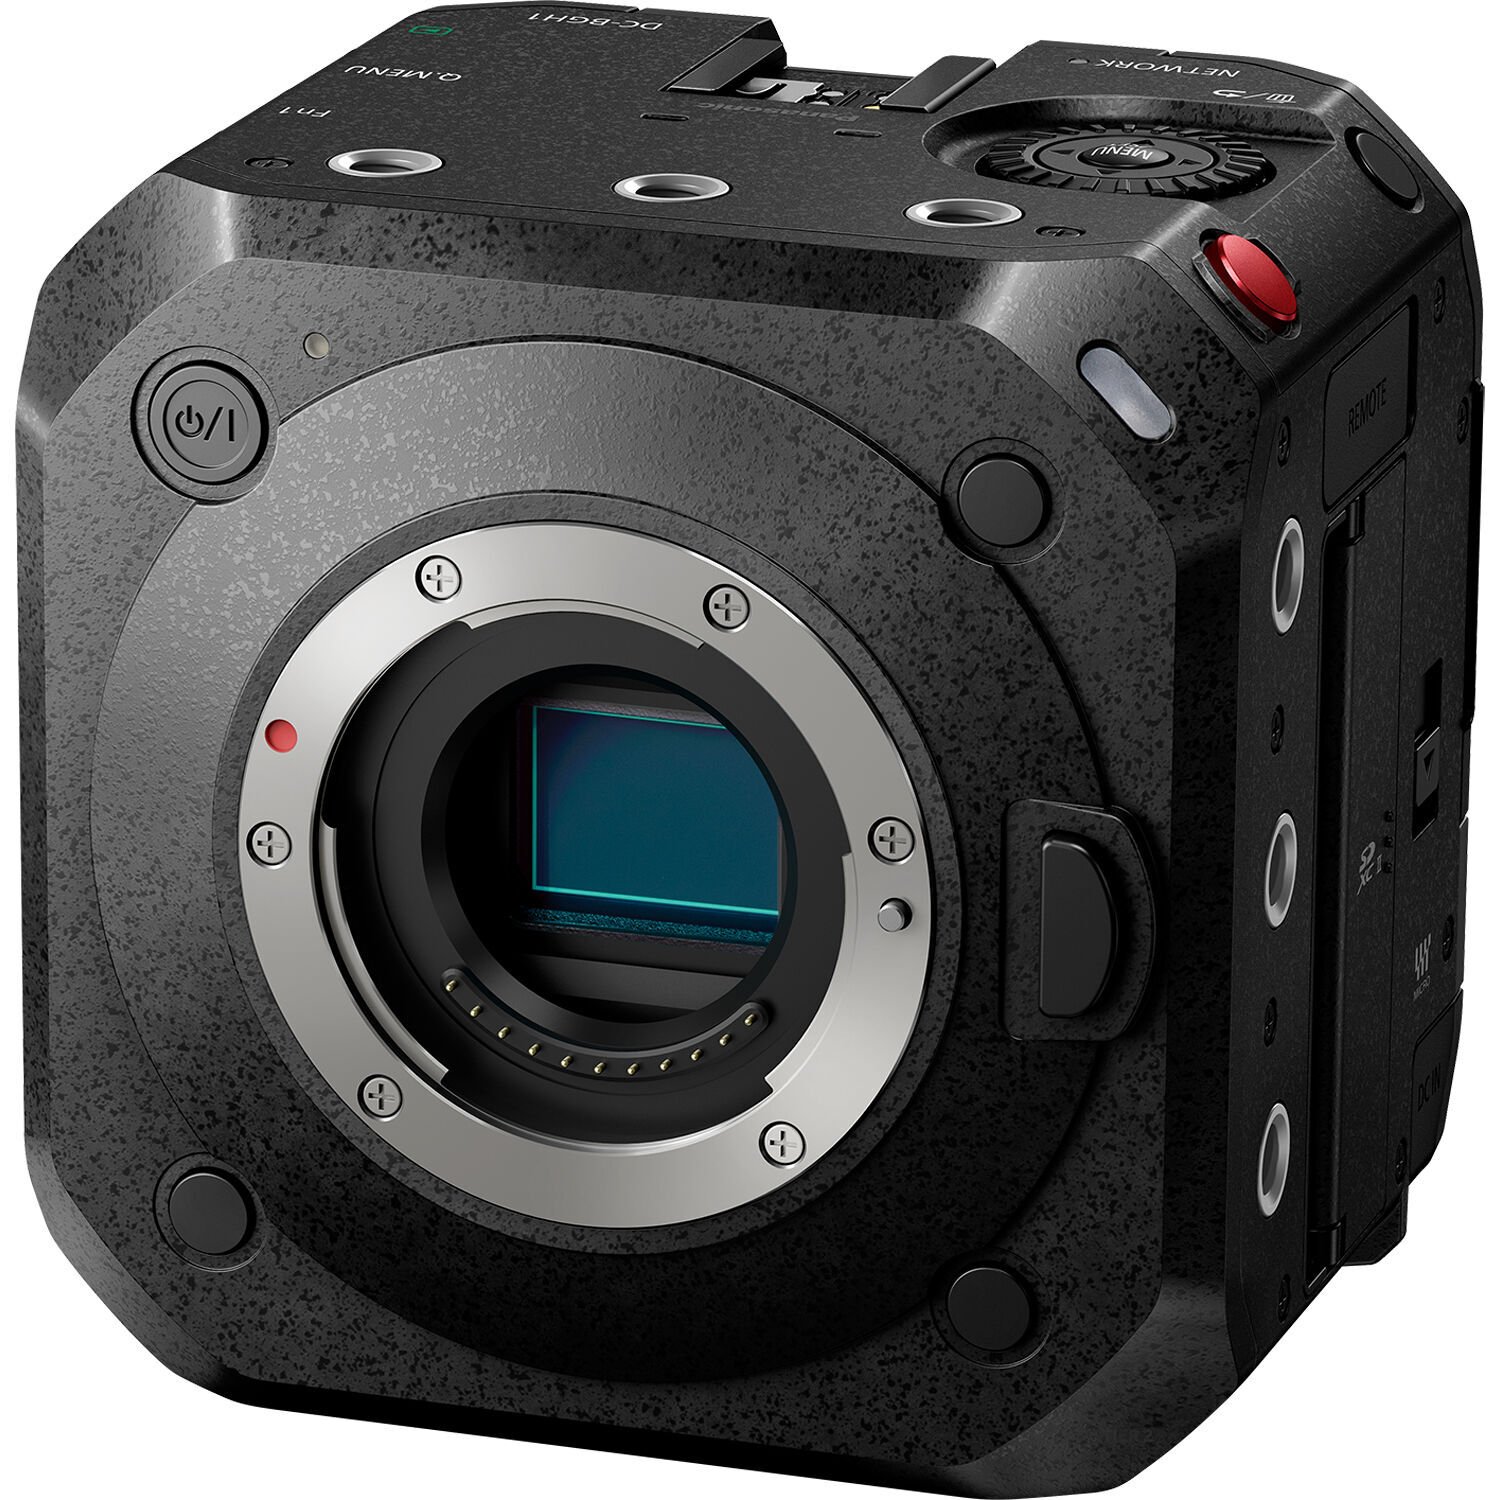 Модульная видеокамера PANASONIC DC-BGH1 (DC-BGH1EE) фото 